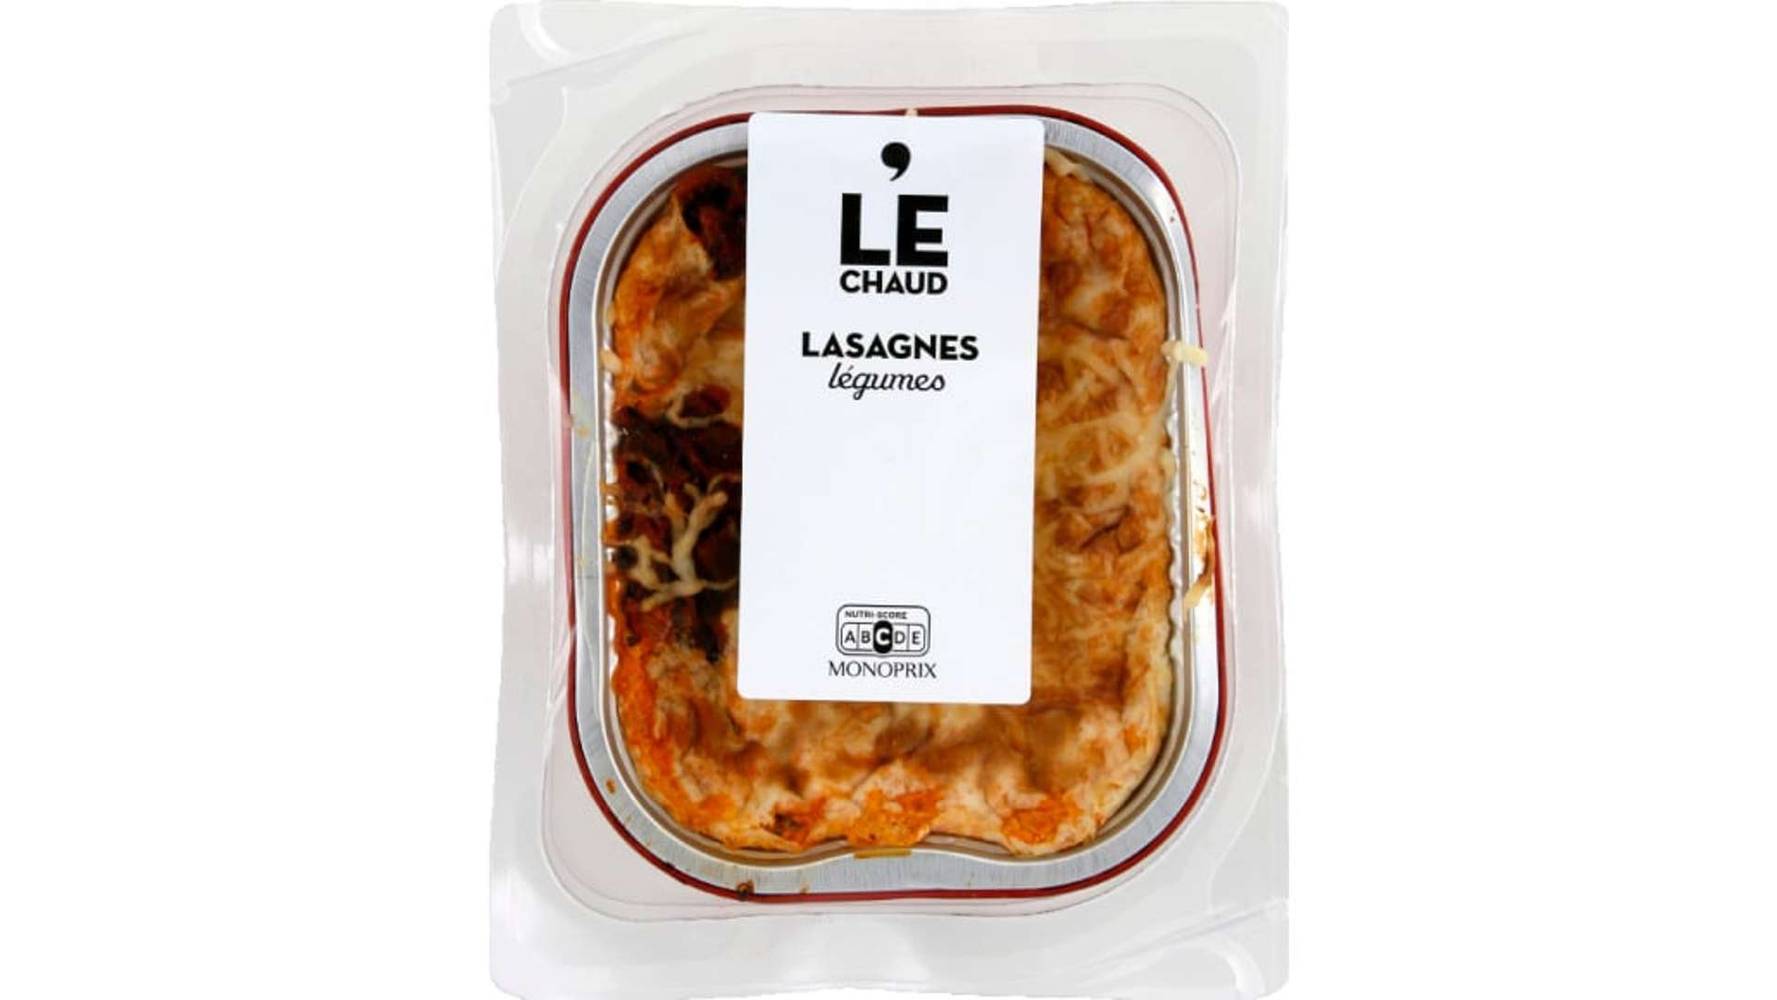 Monoprix Lasagne legumes Le paquet de 350g